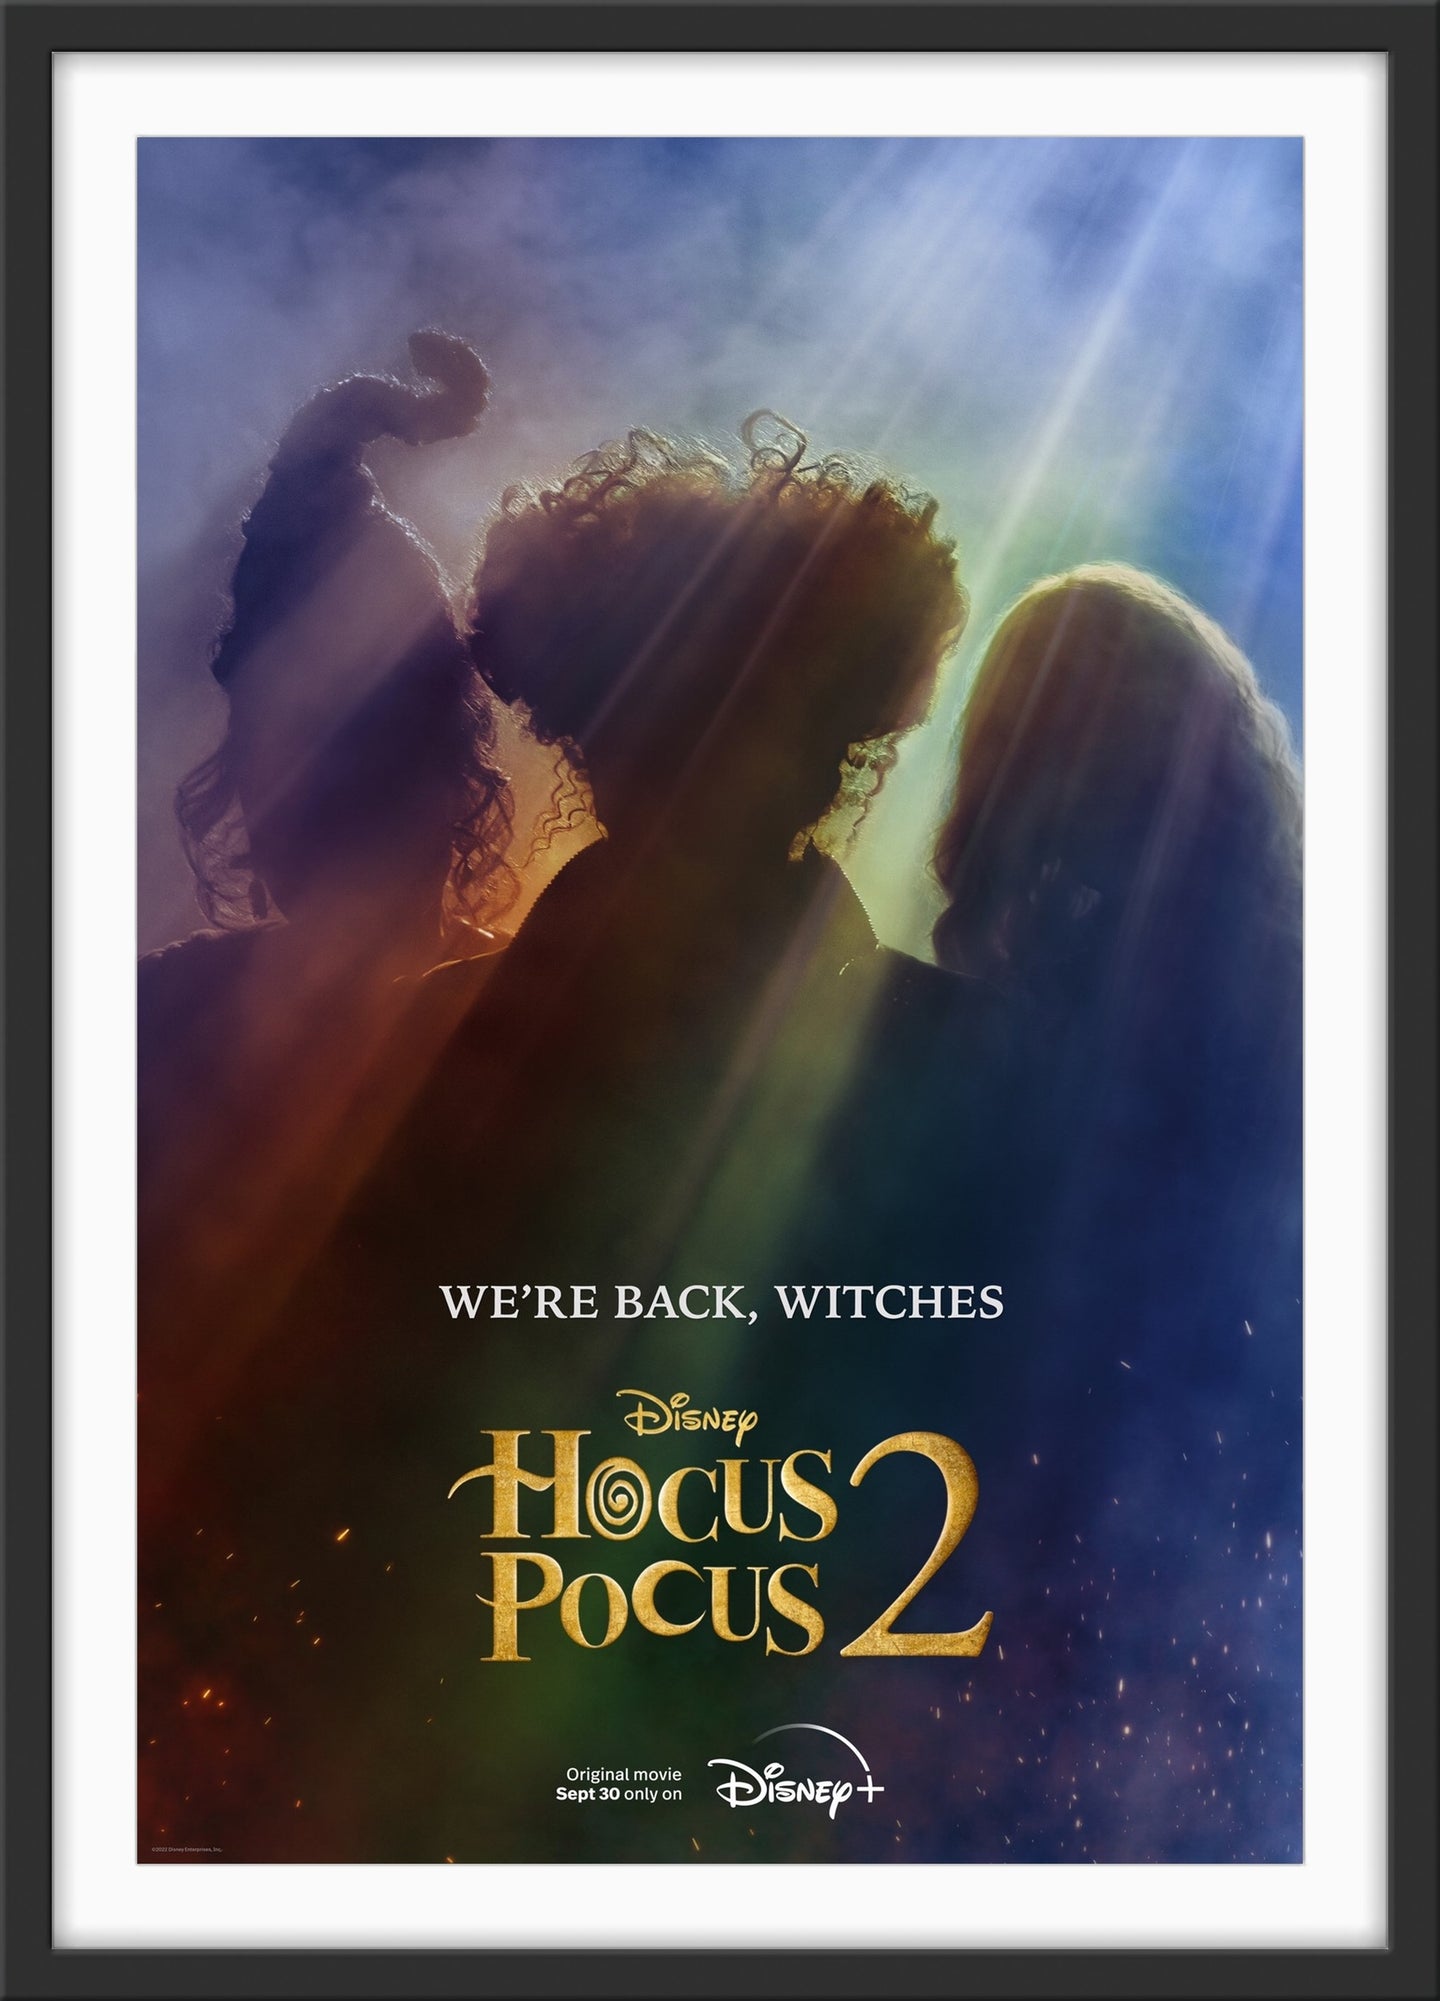 An original teaser movie poster for the film Disney sequel Hocus Pocus 2